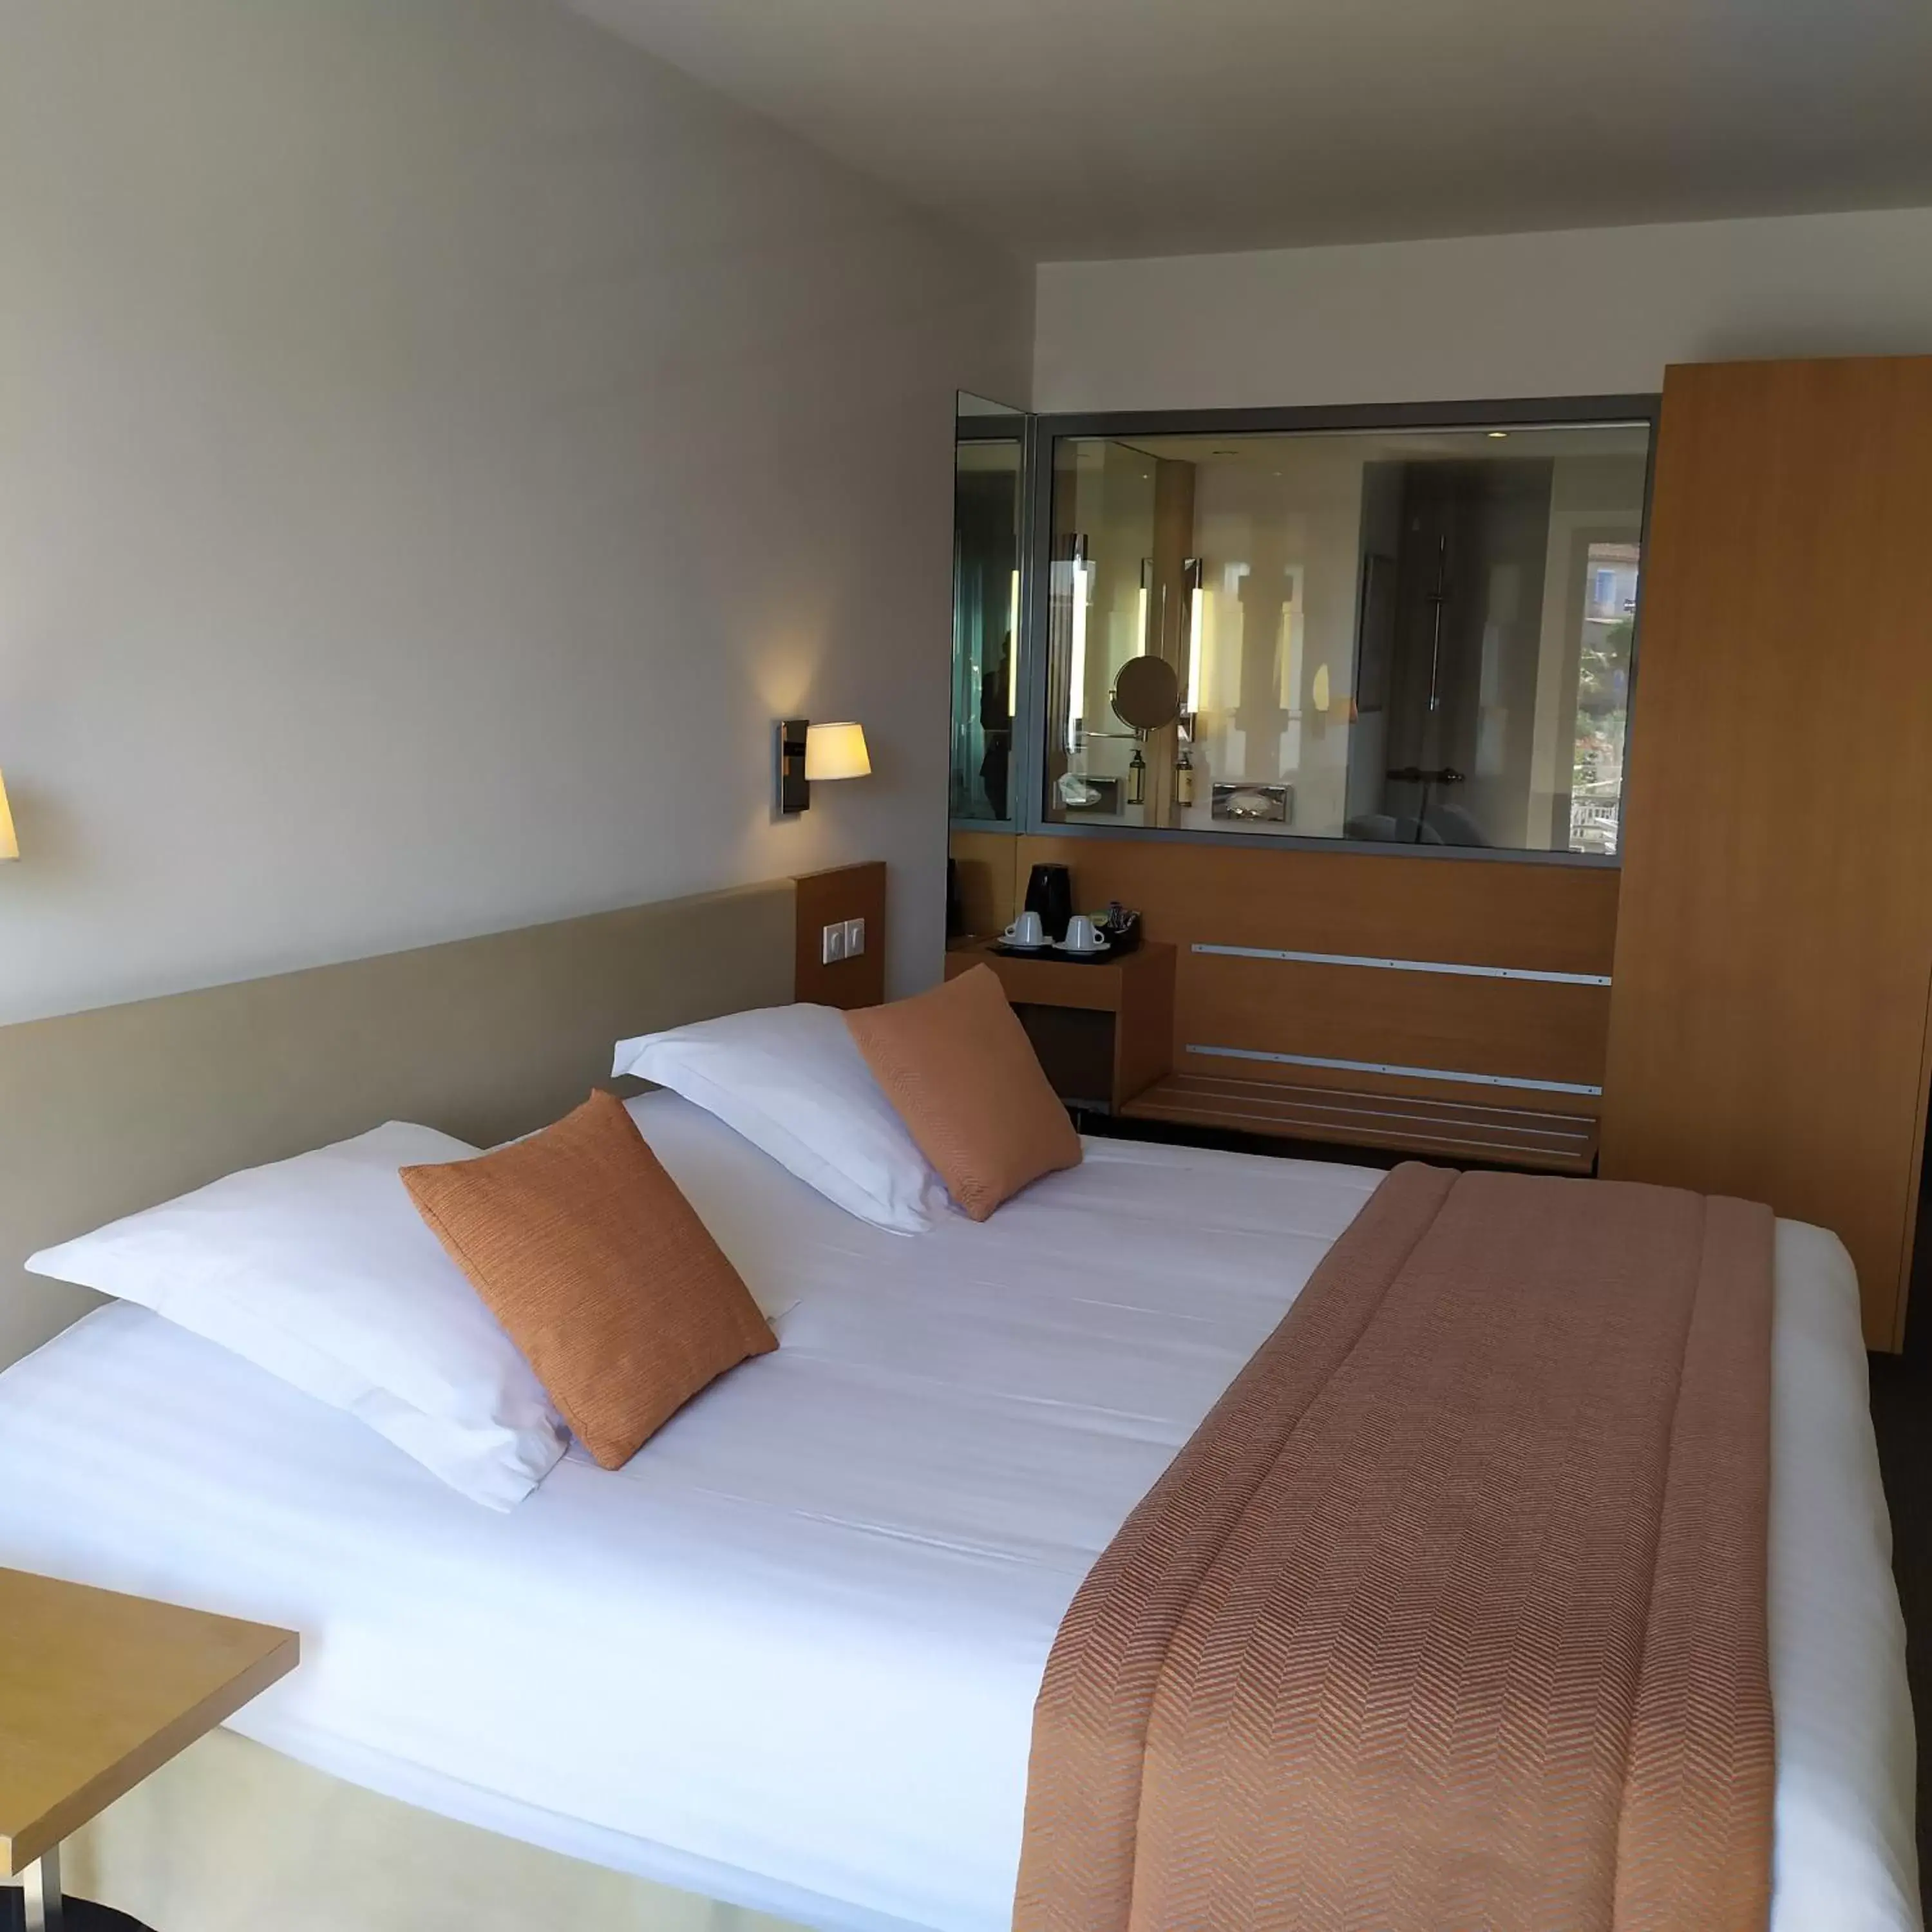 Bedroom, Bed in Best Western Premier Hôtel du Vieux-Port